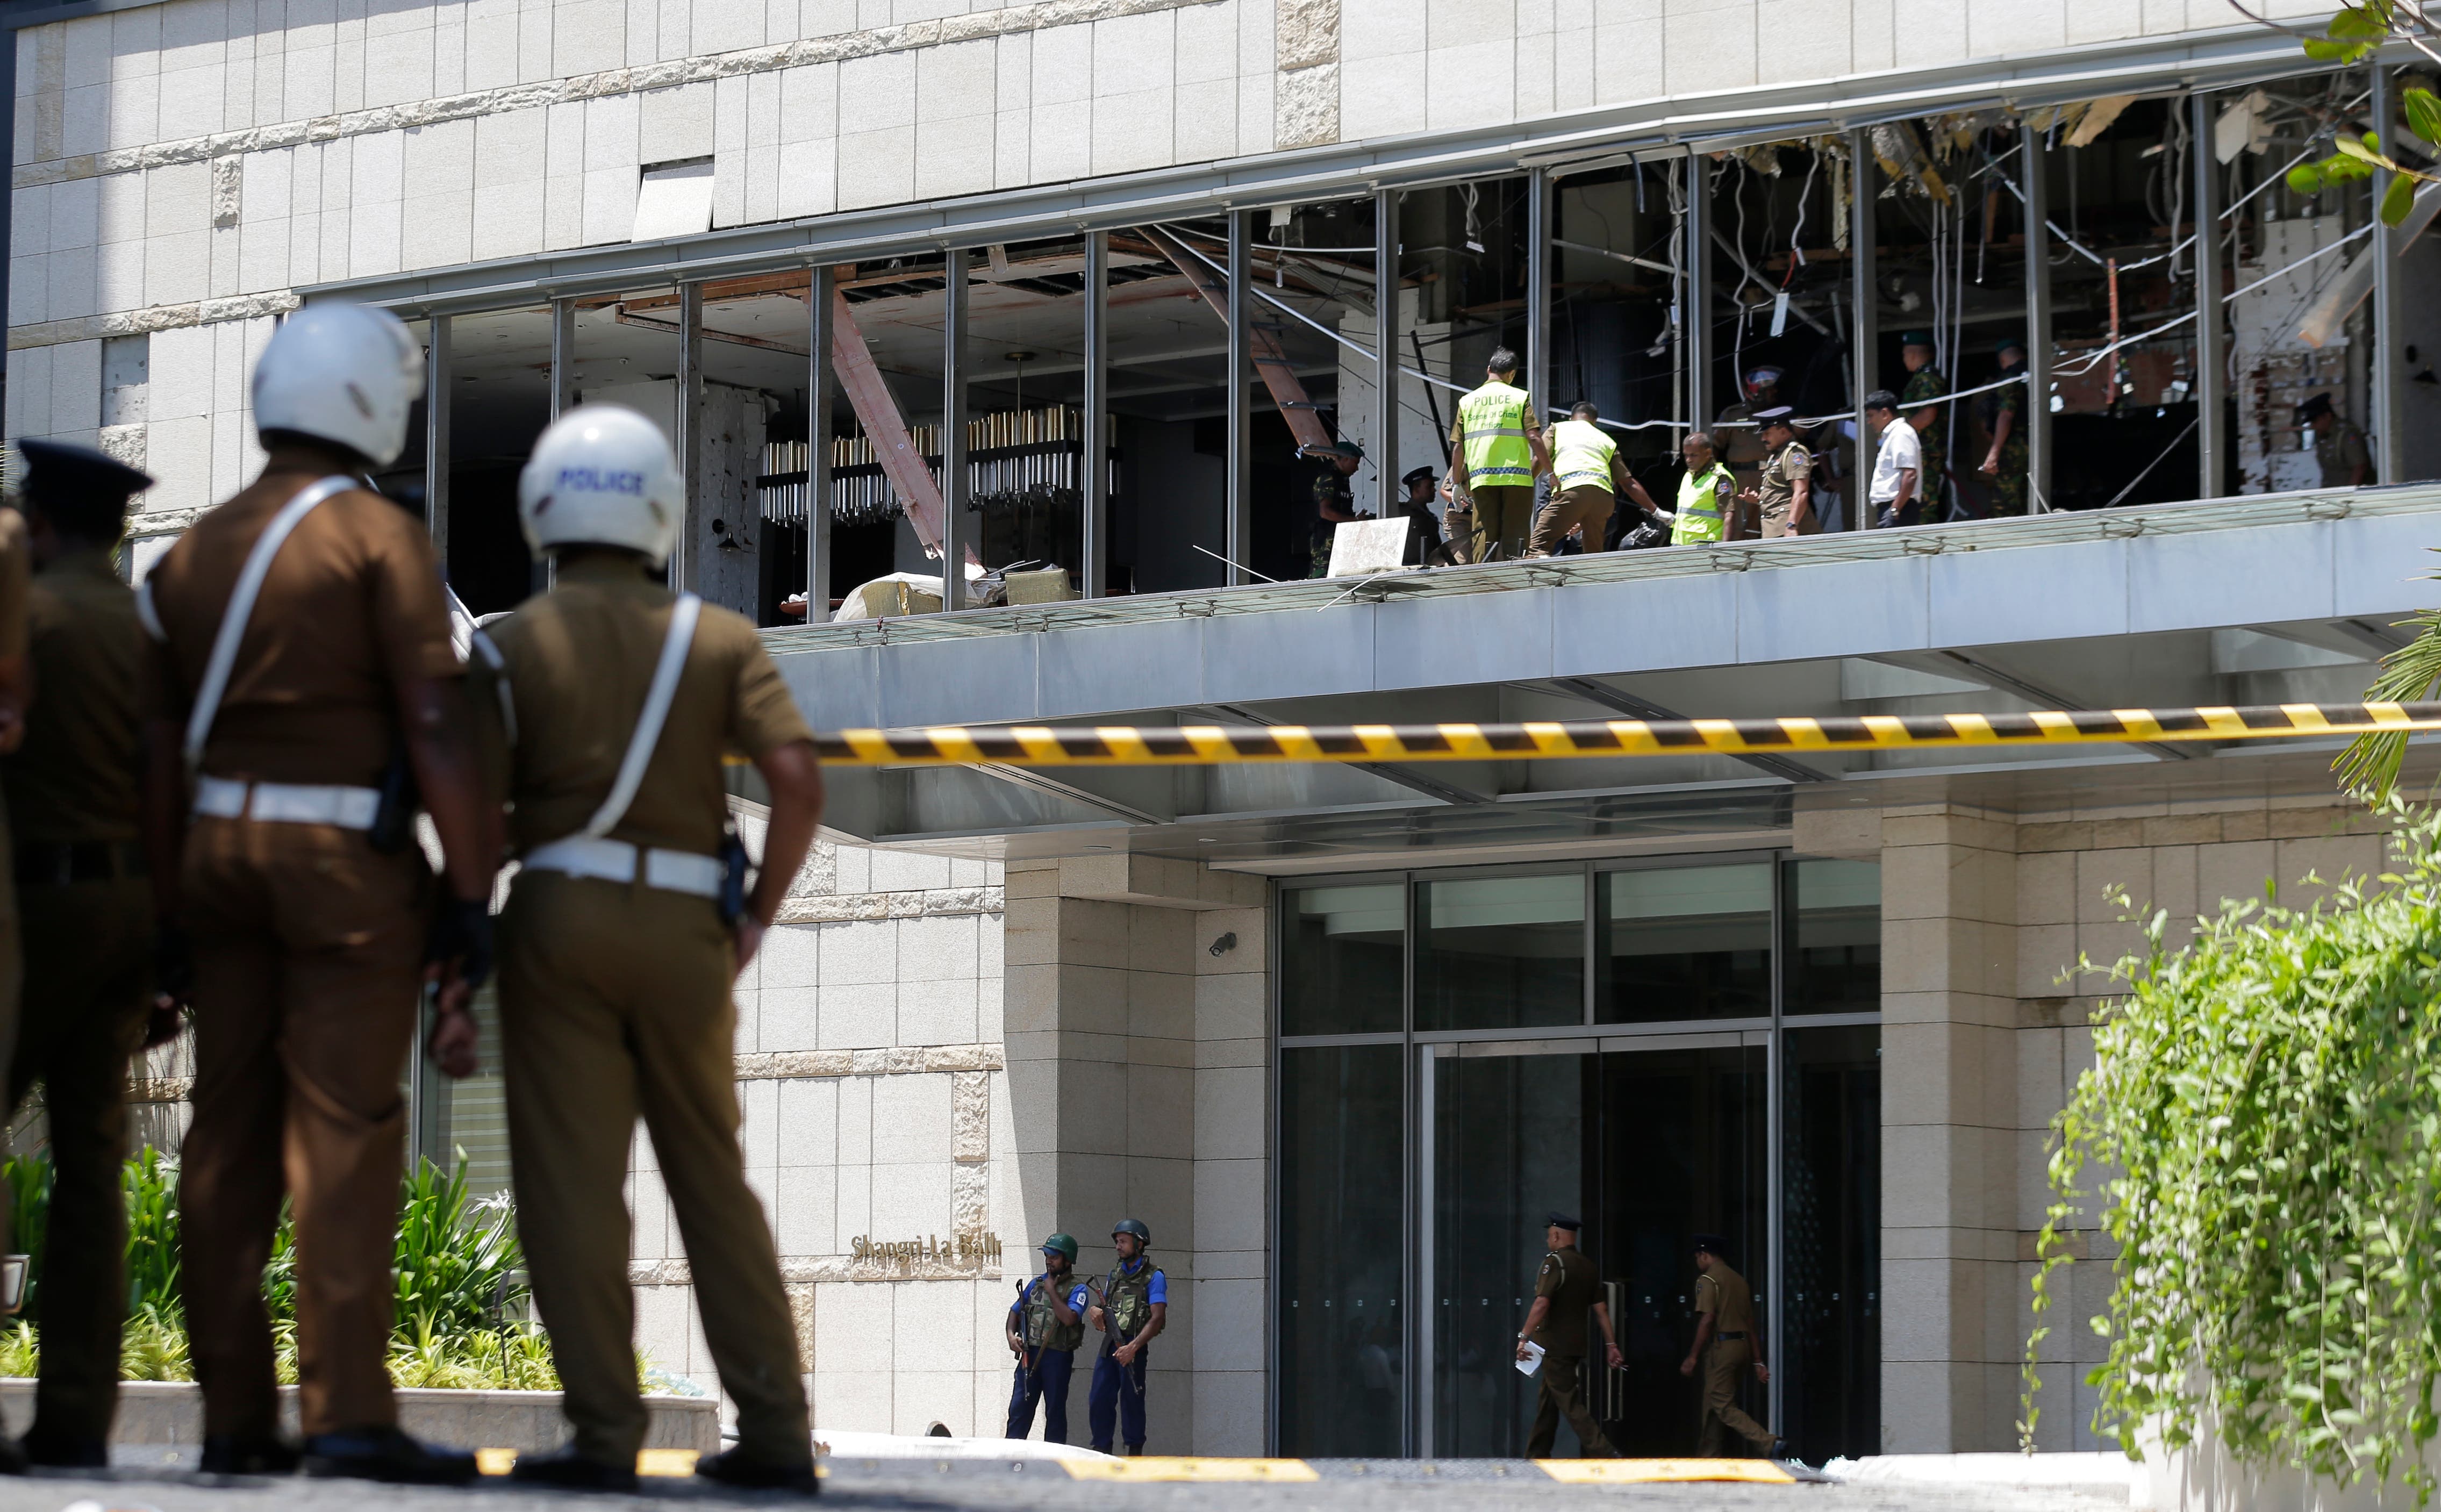 Eine Explosion ereignete sich auch im Hotel Shangri-la. Polizisten und Forensiker sichern nach dem Attentat Spuren. (Bild: Keystone)